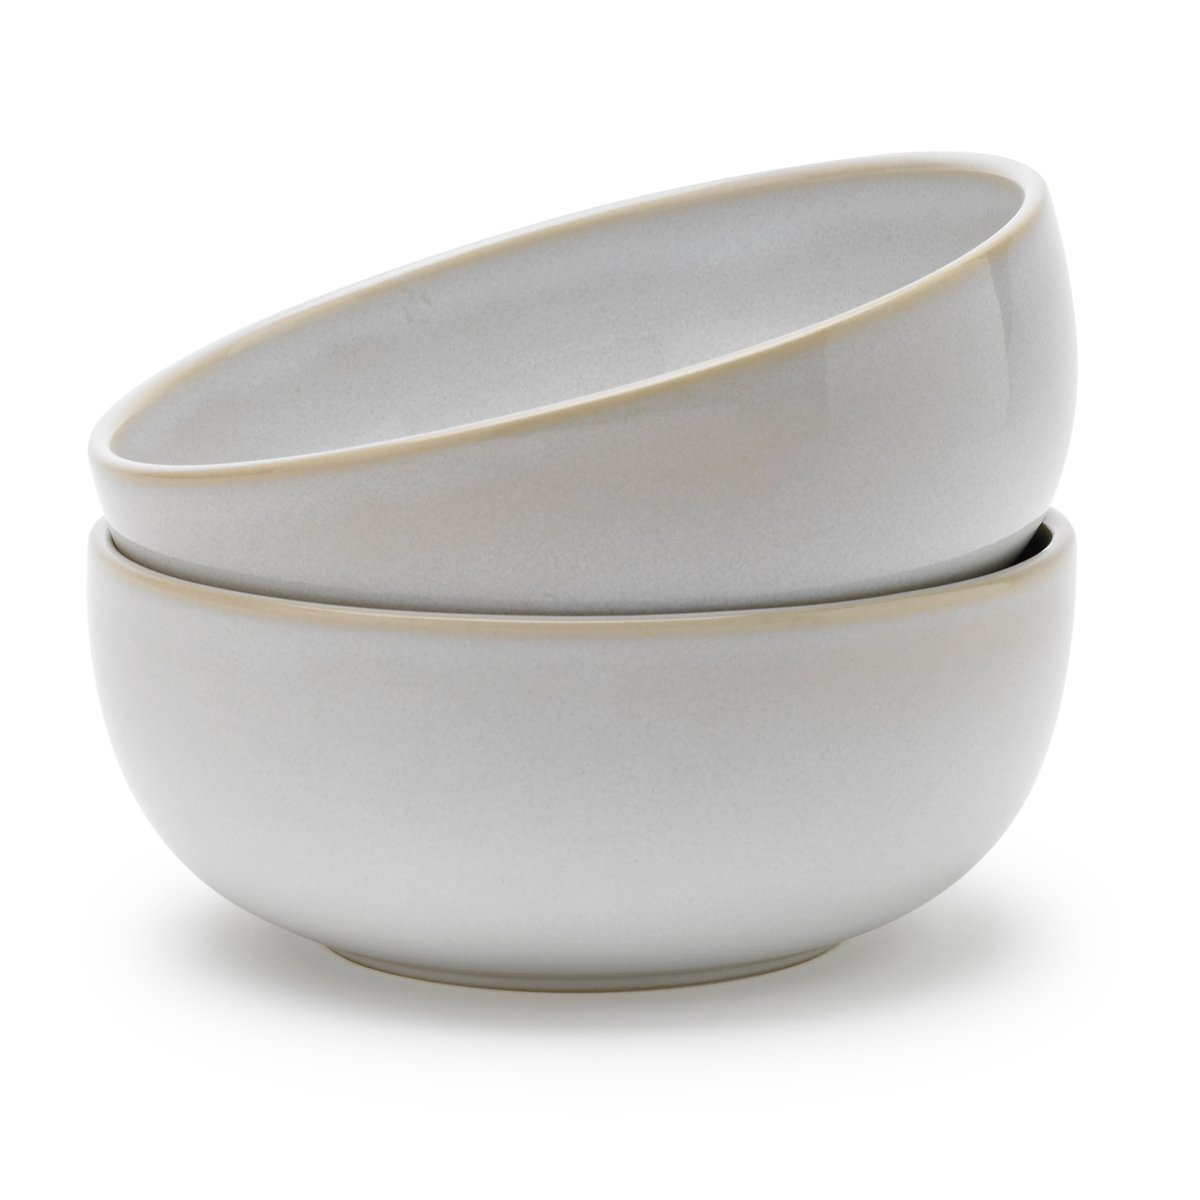 Knabstrup Keramik Tavola dyb tallerken Ø15 cm 2-pak Hvid